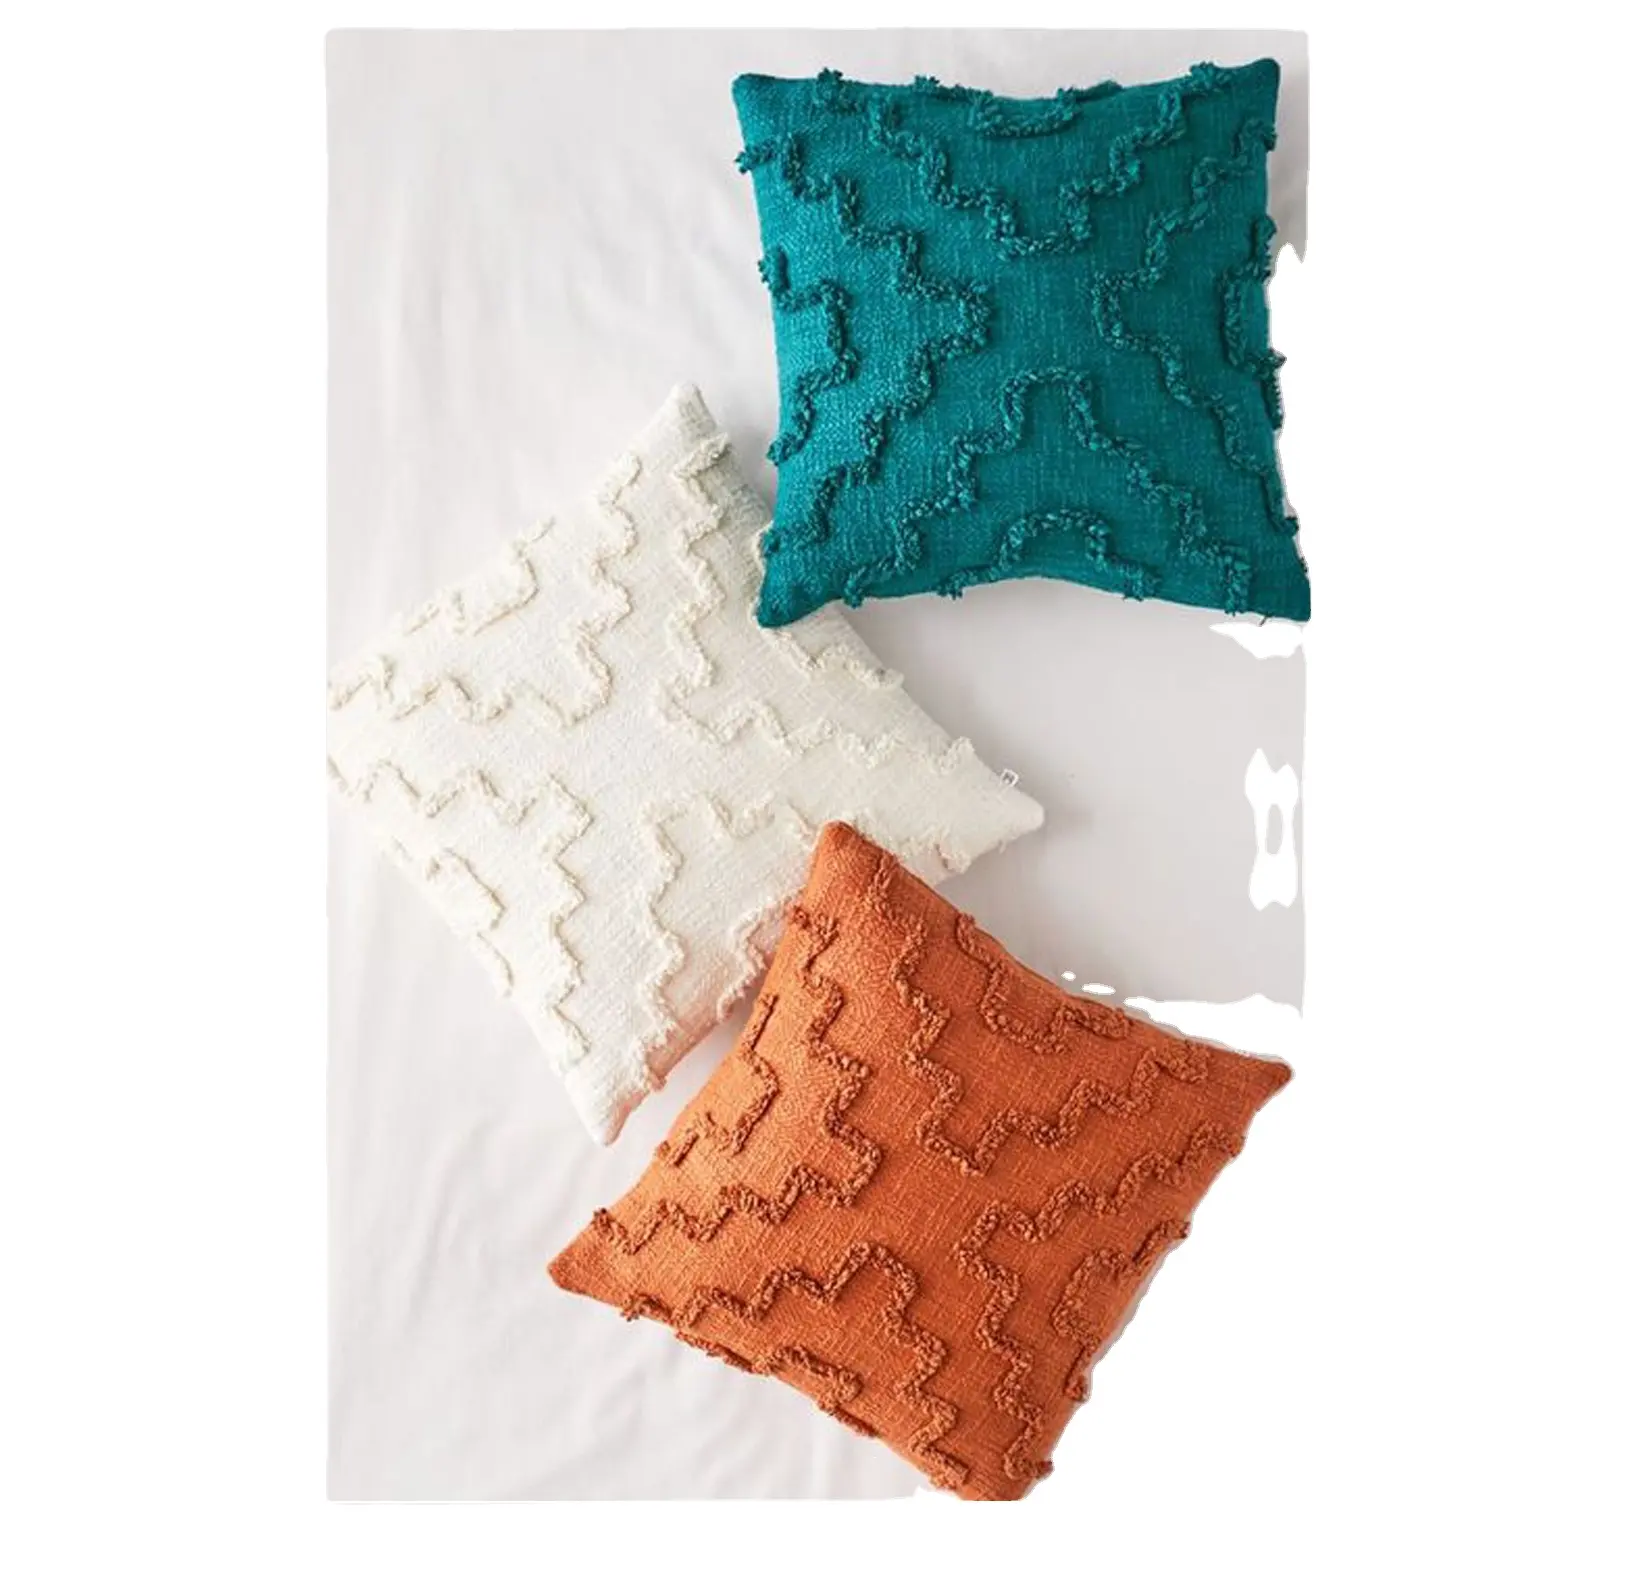 Capa para almofada em várias cores, capa criativa de algodão e lona, decoração para almofada, capa e sofá